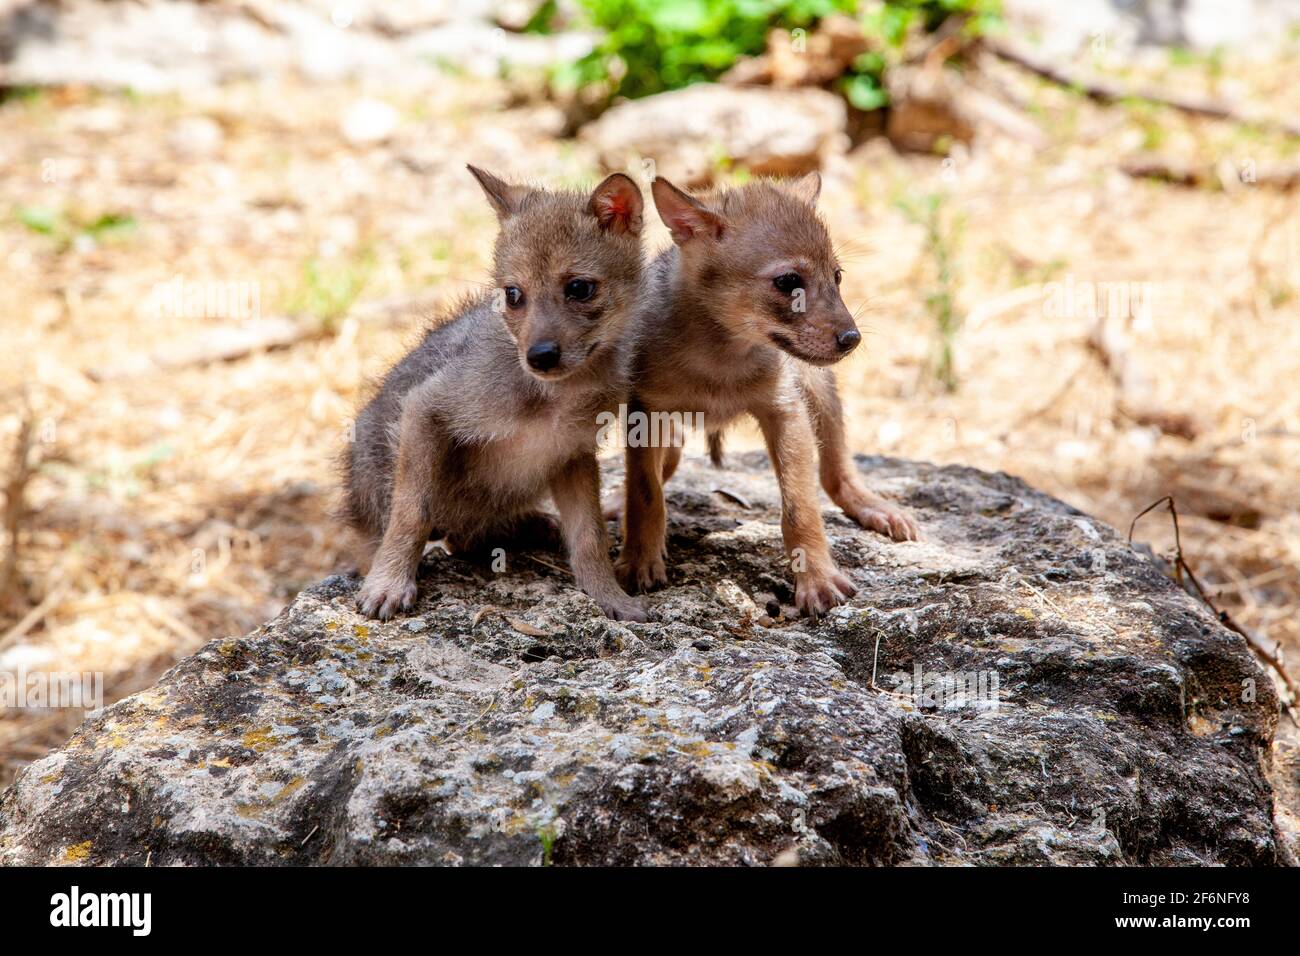 Cubs curieux d'un Jackal d'or (Canis aureus), également appelé le jeu asiatique, oriental ou commun Jackal près de leur den. Photographié en Israël en juin Banque D'Images